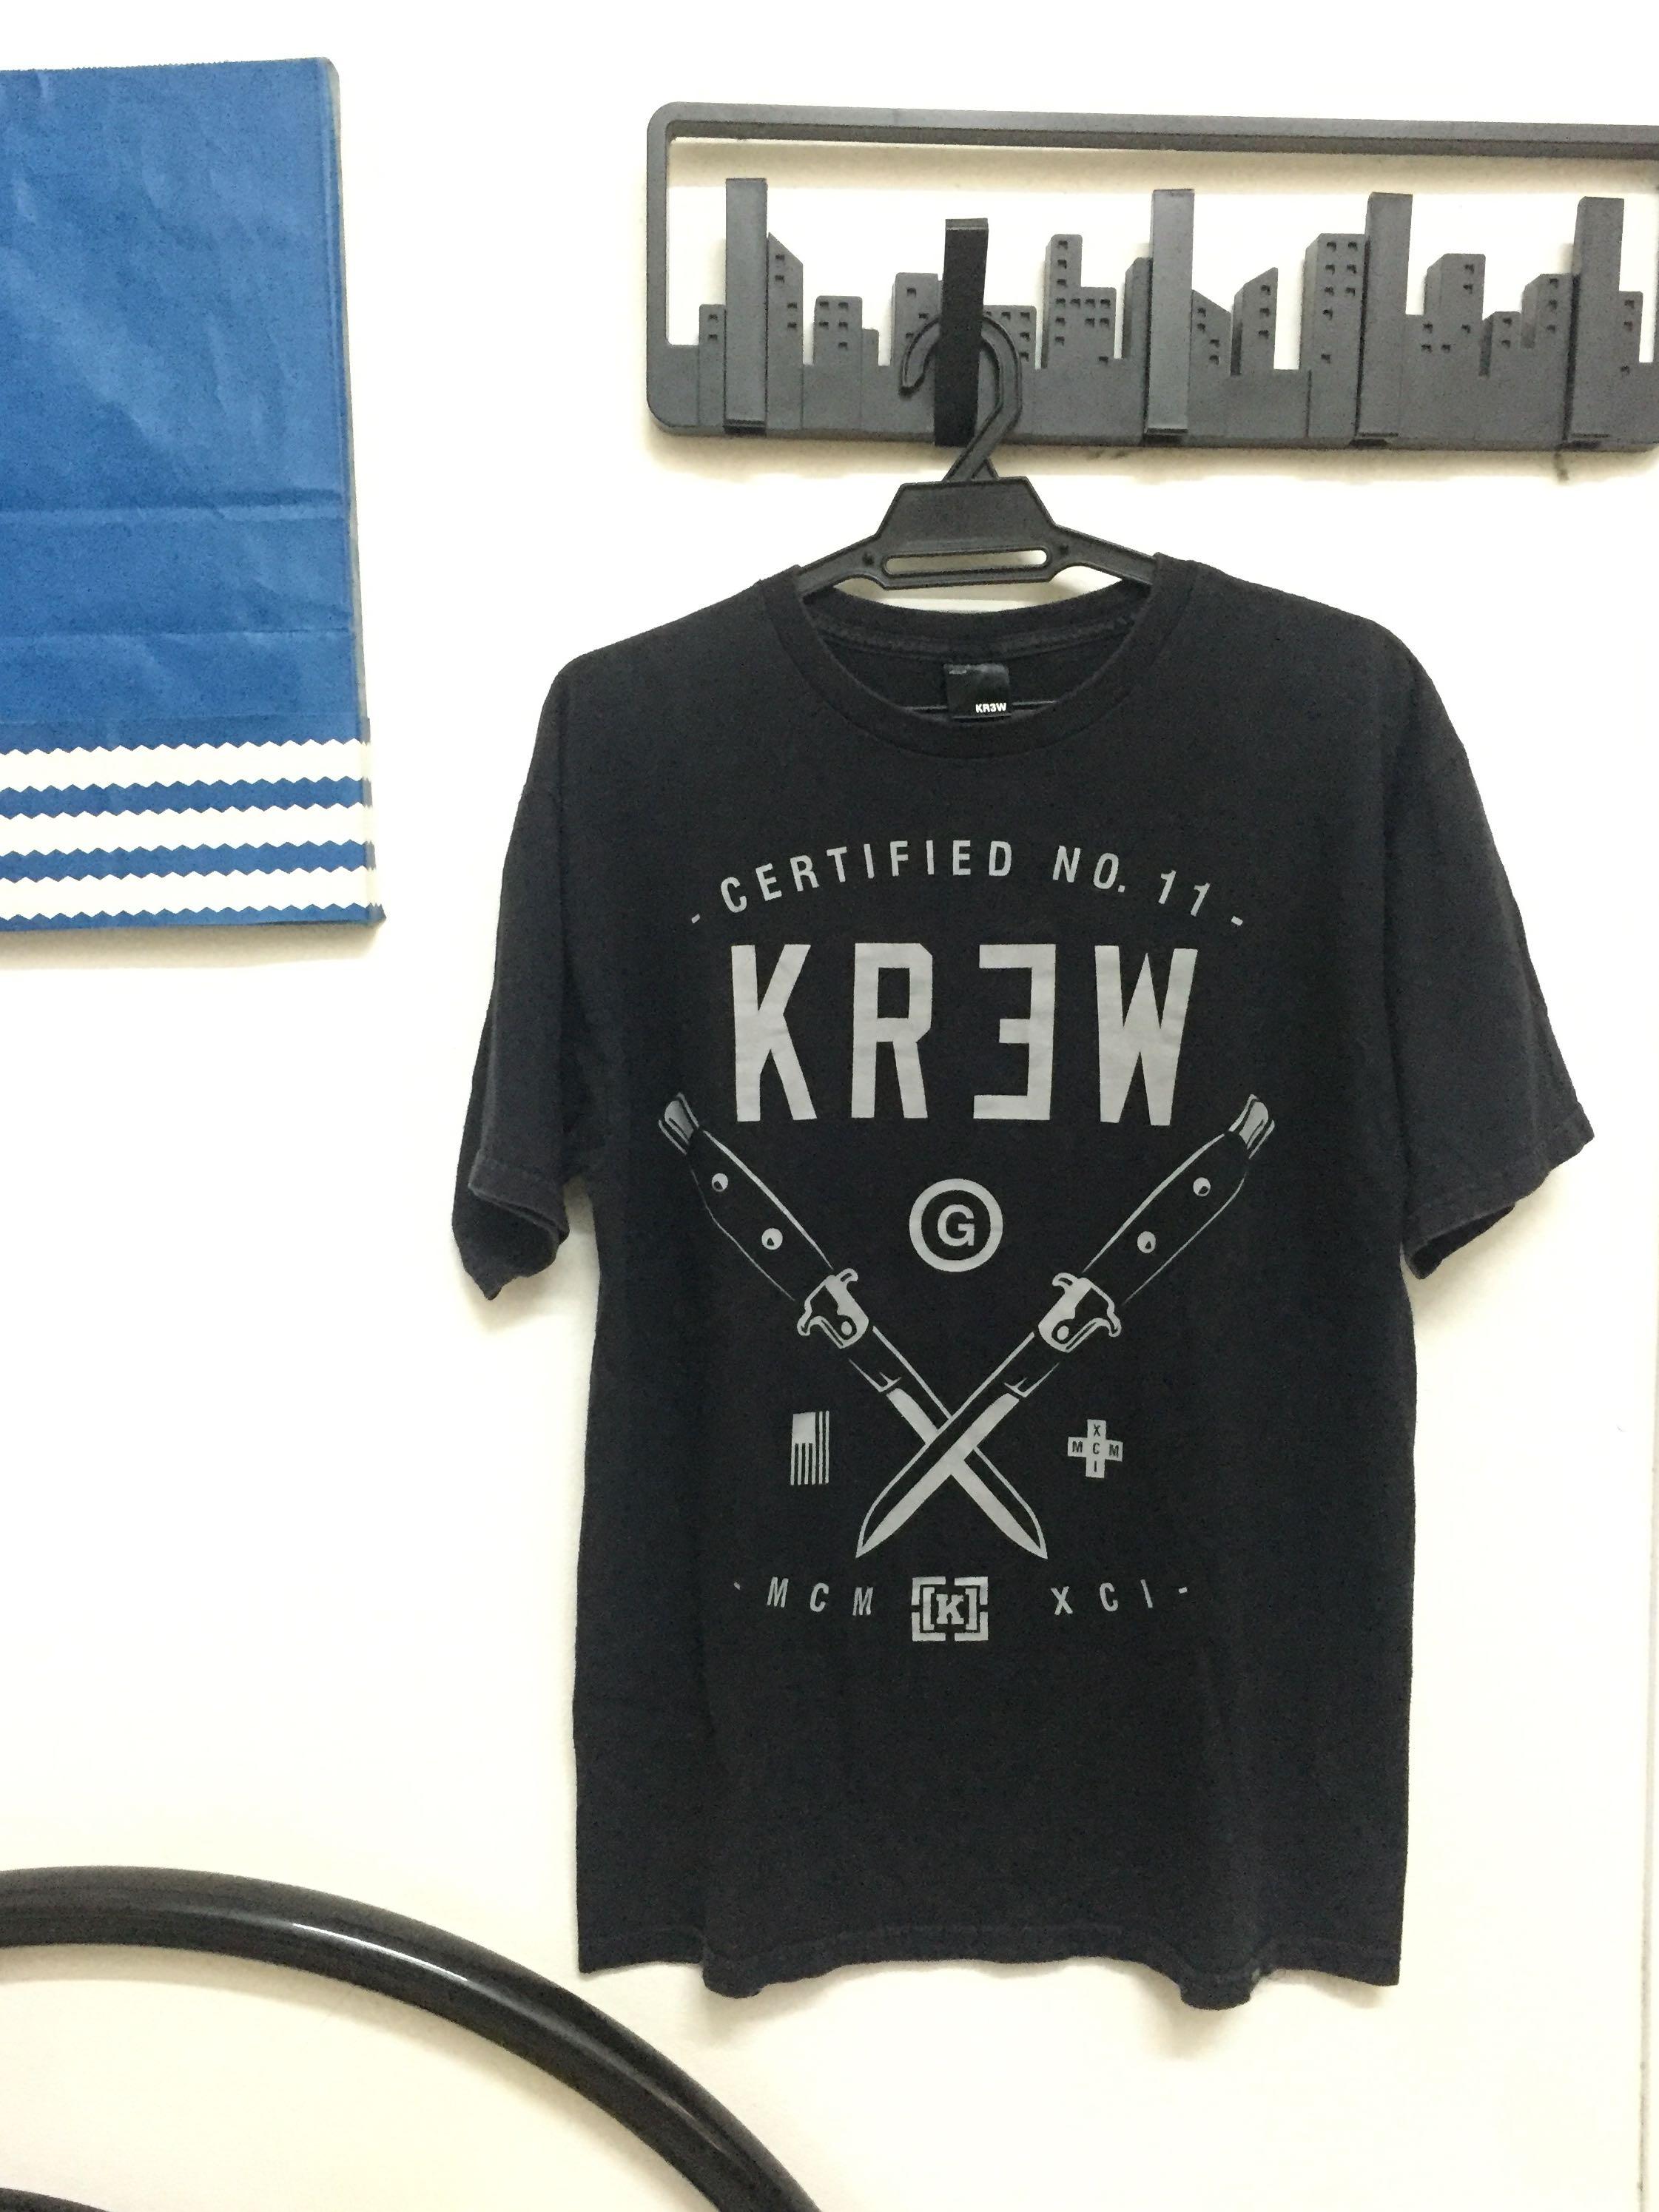 Krew Skateboard Logo - KREW SKATEBOARDS, Men's Fashion, Clothes on Carousell